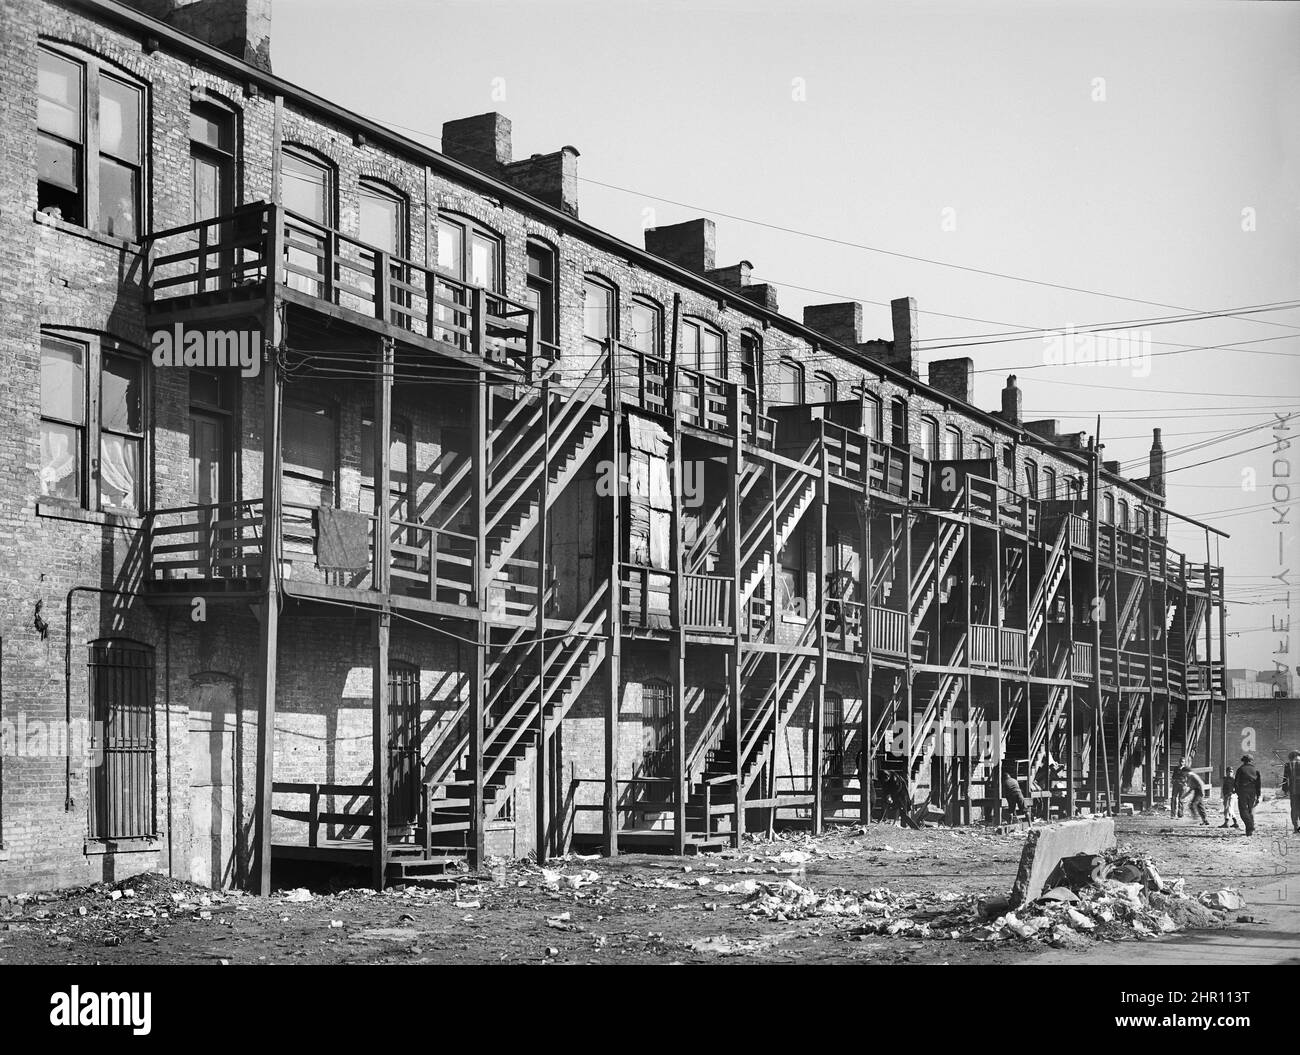 Vista posteriore di case di appartamento con scala di legno, lato sud, Chicago, Illinois, Stati Uniti, Russell Lee, U.S. Office of War Information/U.S. Farm Security Administration, aprile 1941 Foto Stock